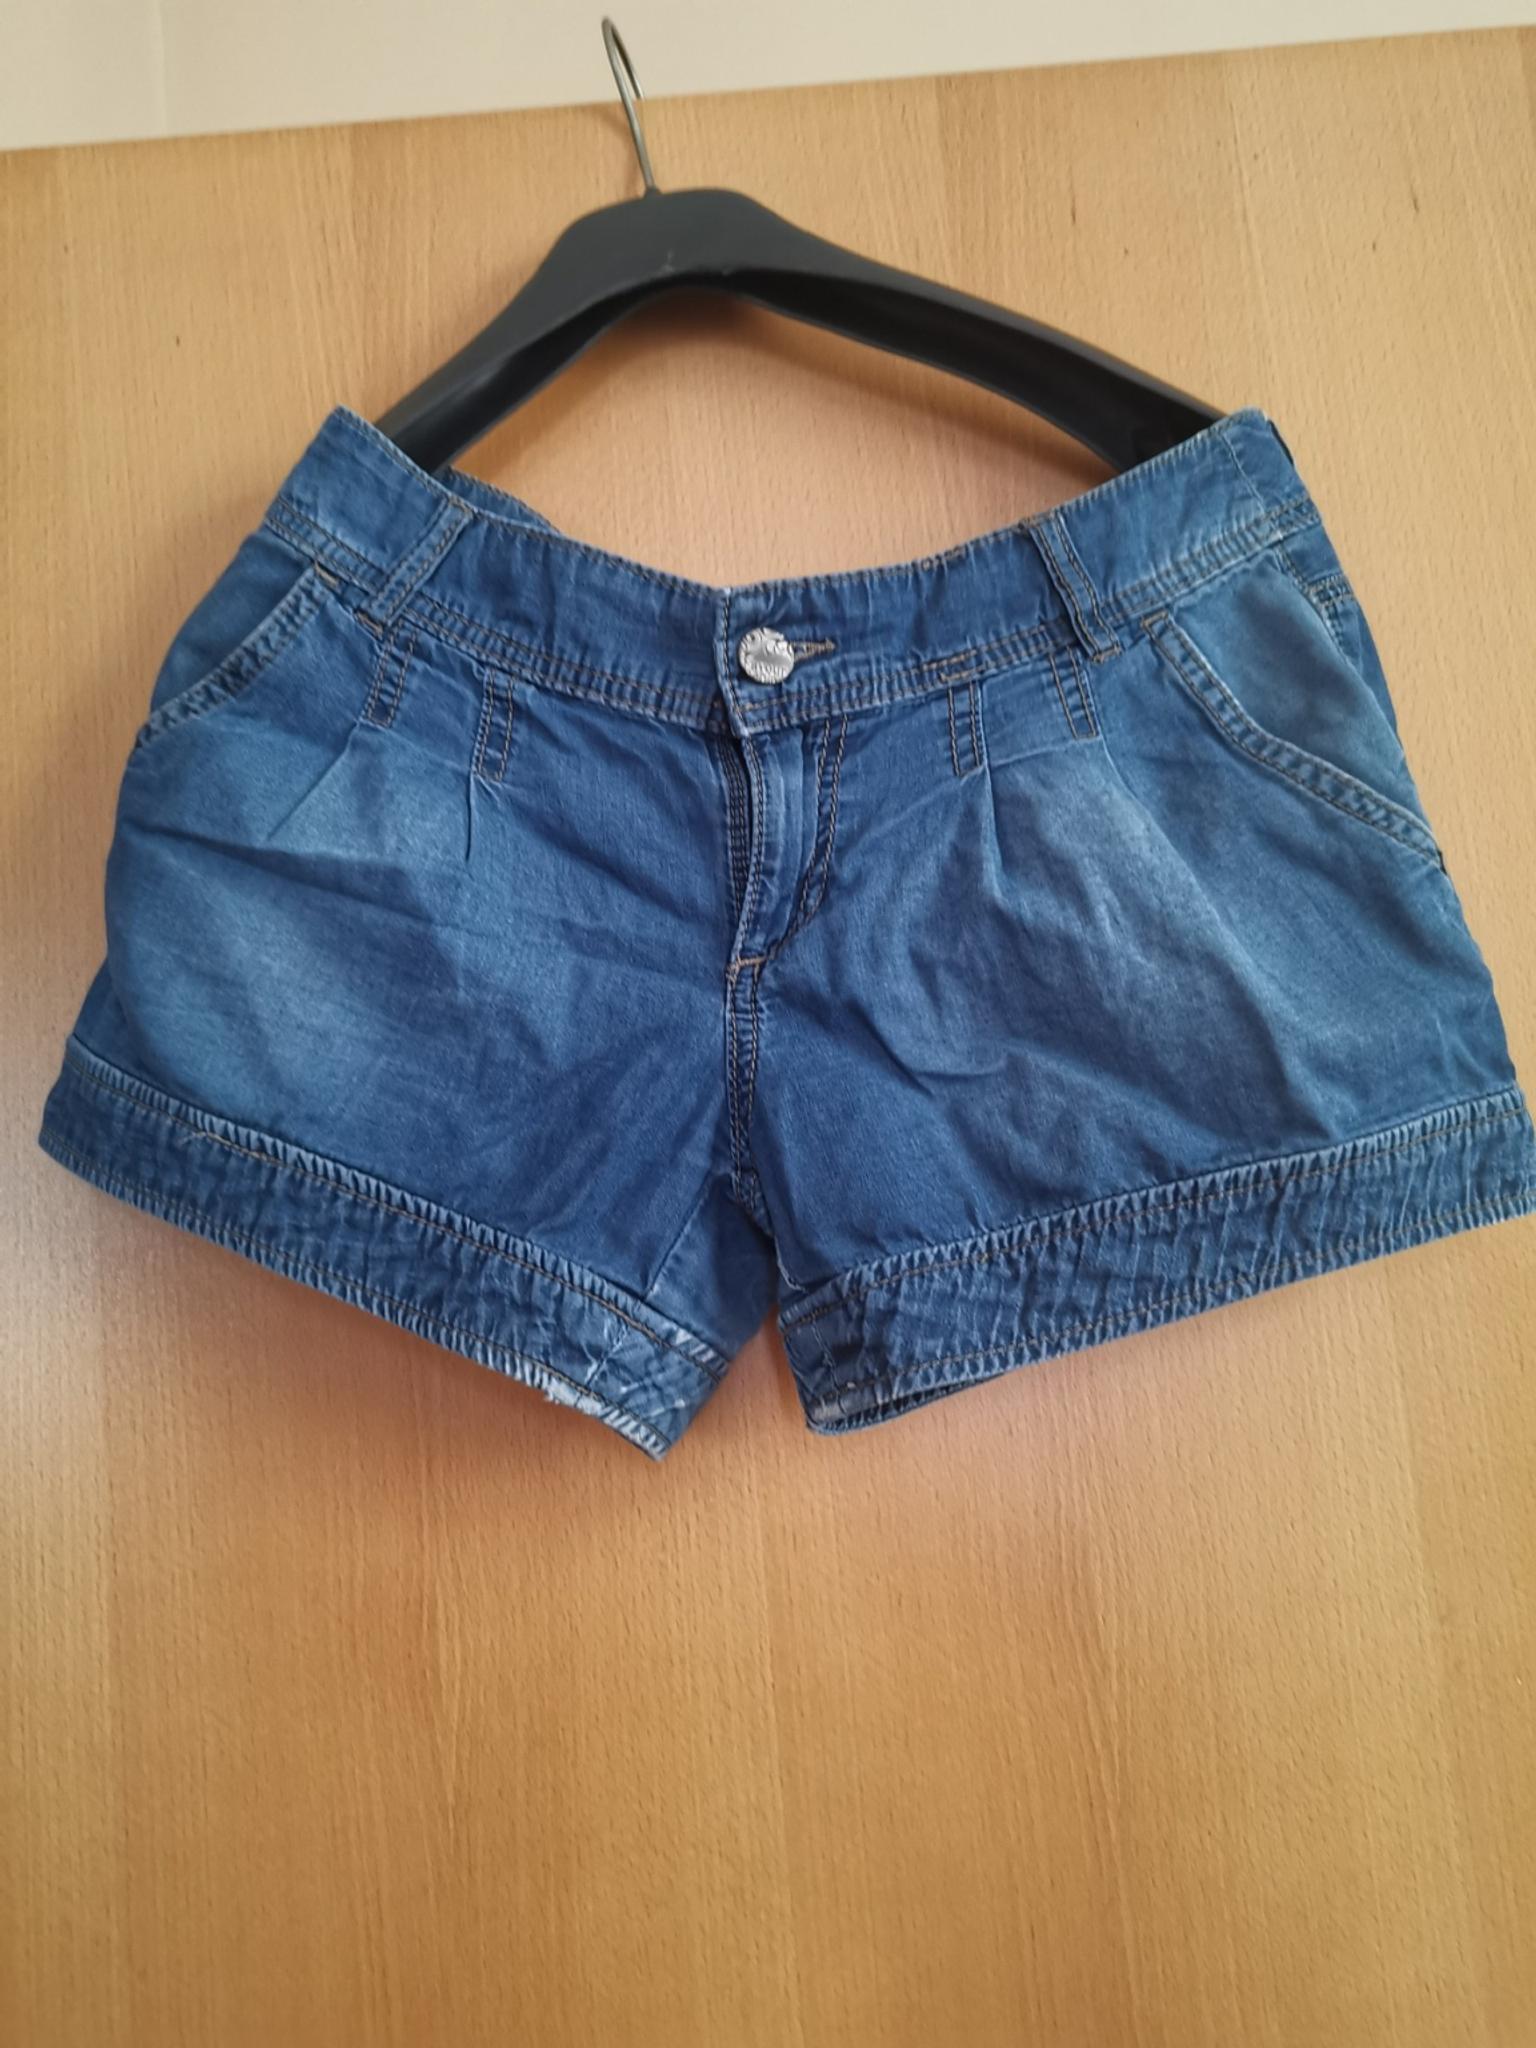 Jeans Hotpants Damen Sommer In 1100 Kg Favoriten For 4 00 For Sale Shpock